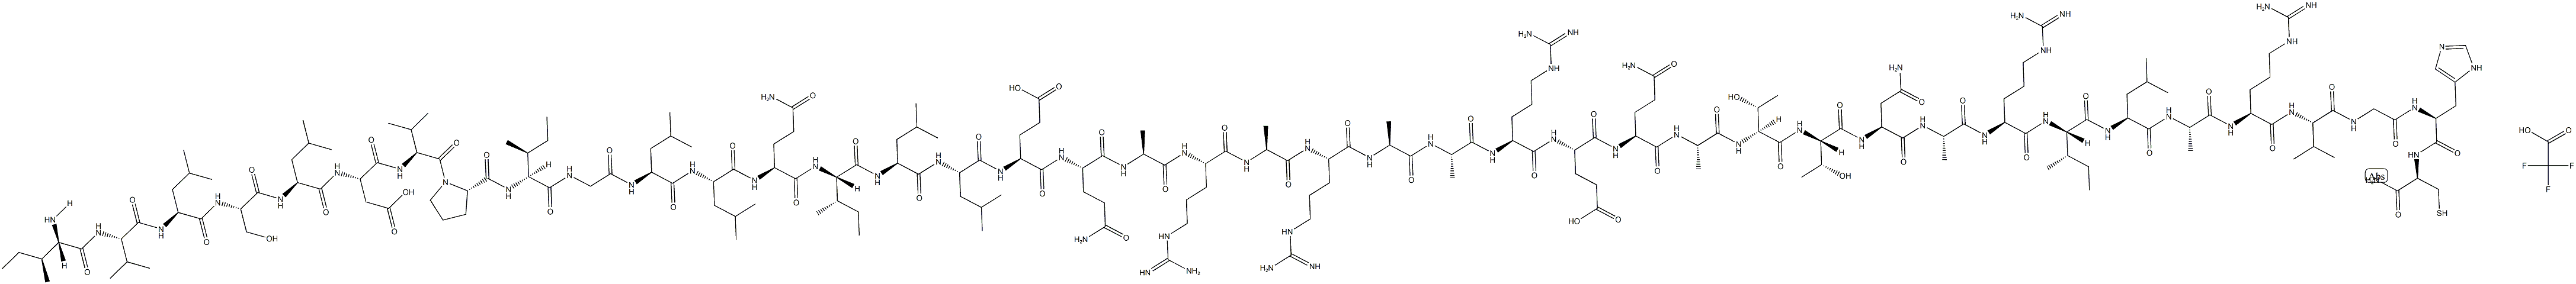 STRESSCOPIN관련펩티드(6-43)(인간)트리플루오로아세테이트염